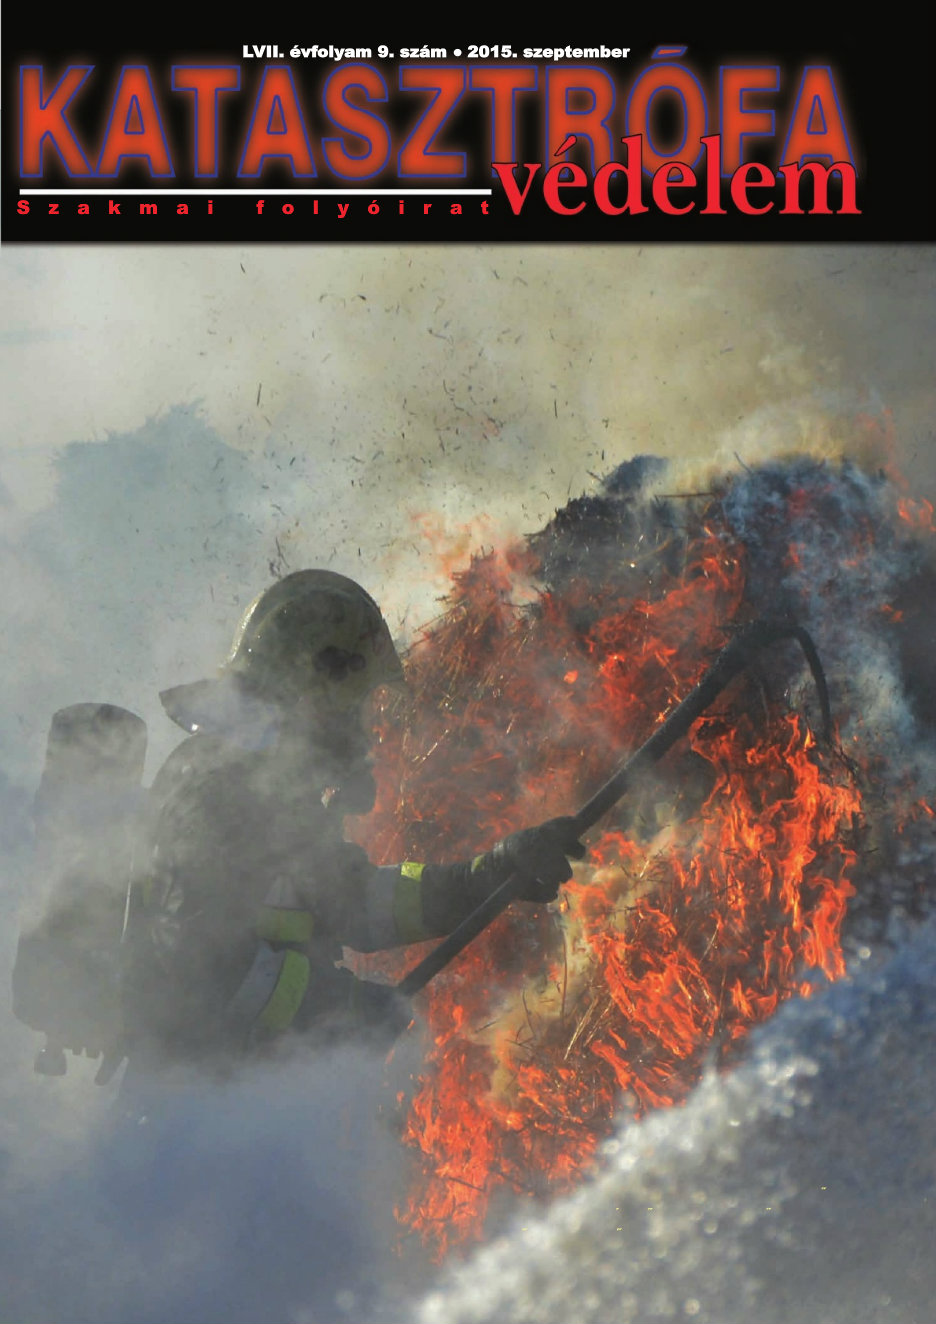 A Katasztrófavédelem magazin LVII. évfolyam 9. szám megtekintése